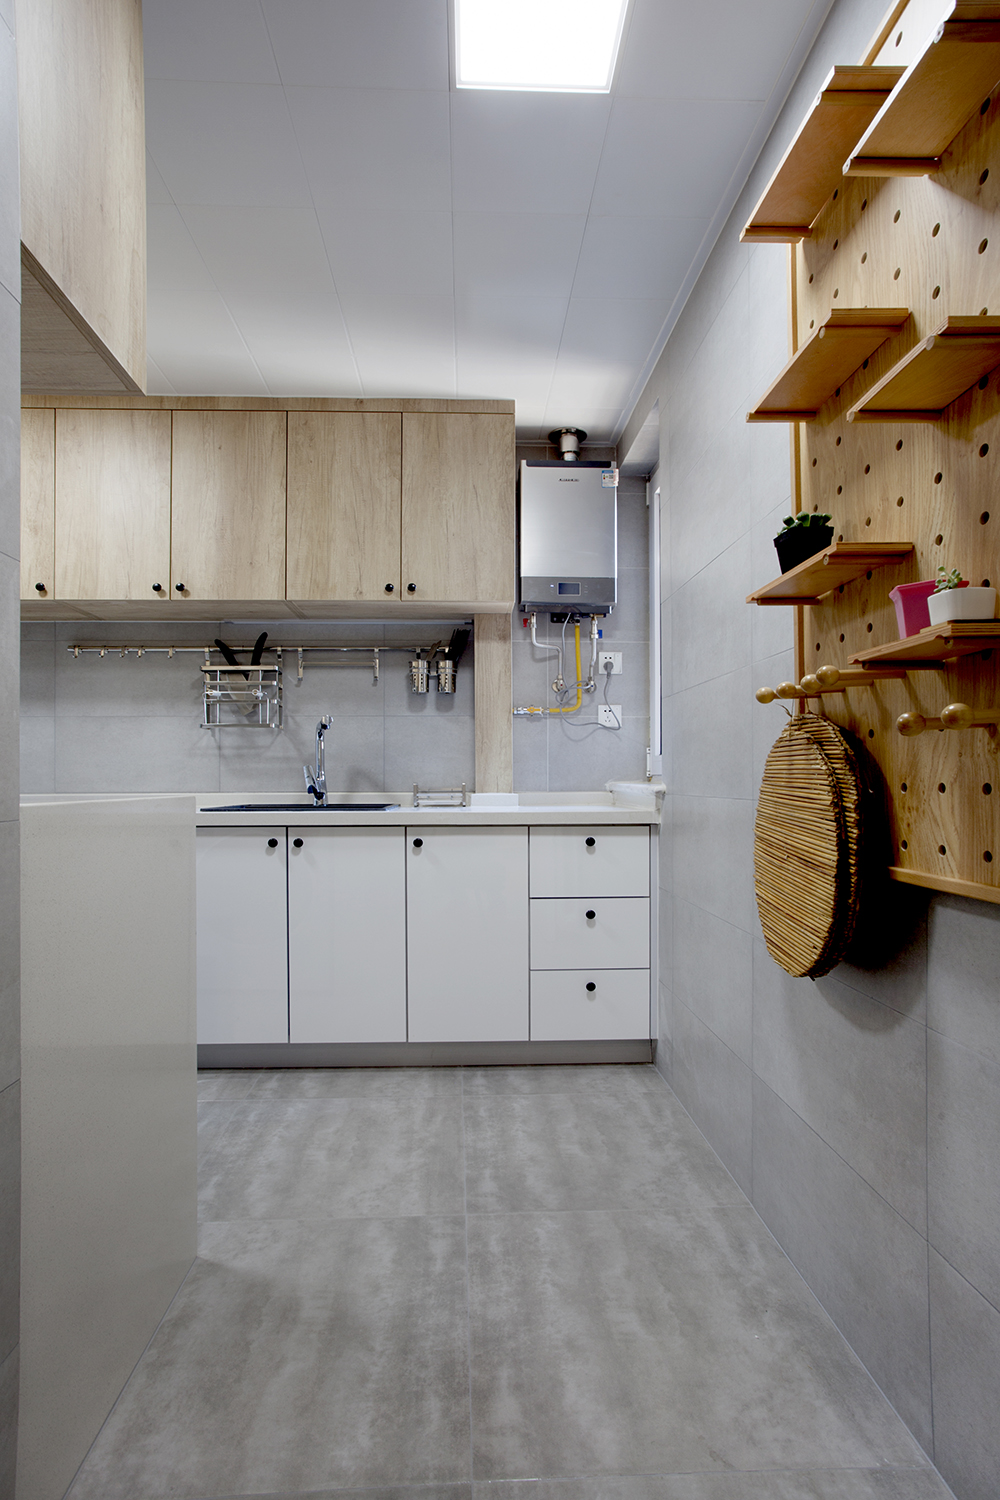 厨房采用灰白木色调，动线规划有序，描绘出温柔静谧的烹饪氛围。